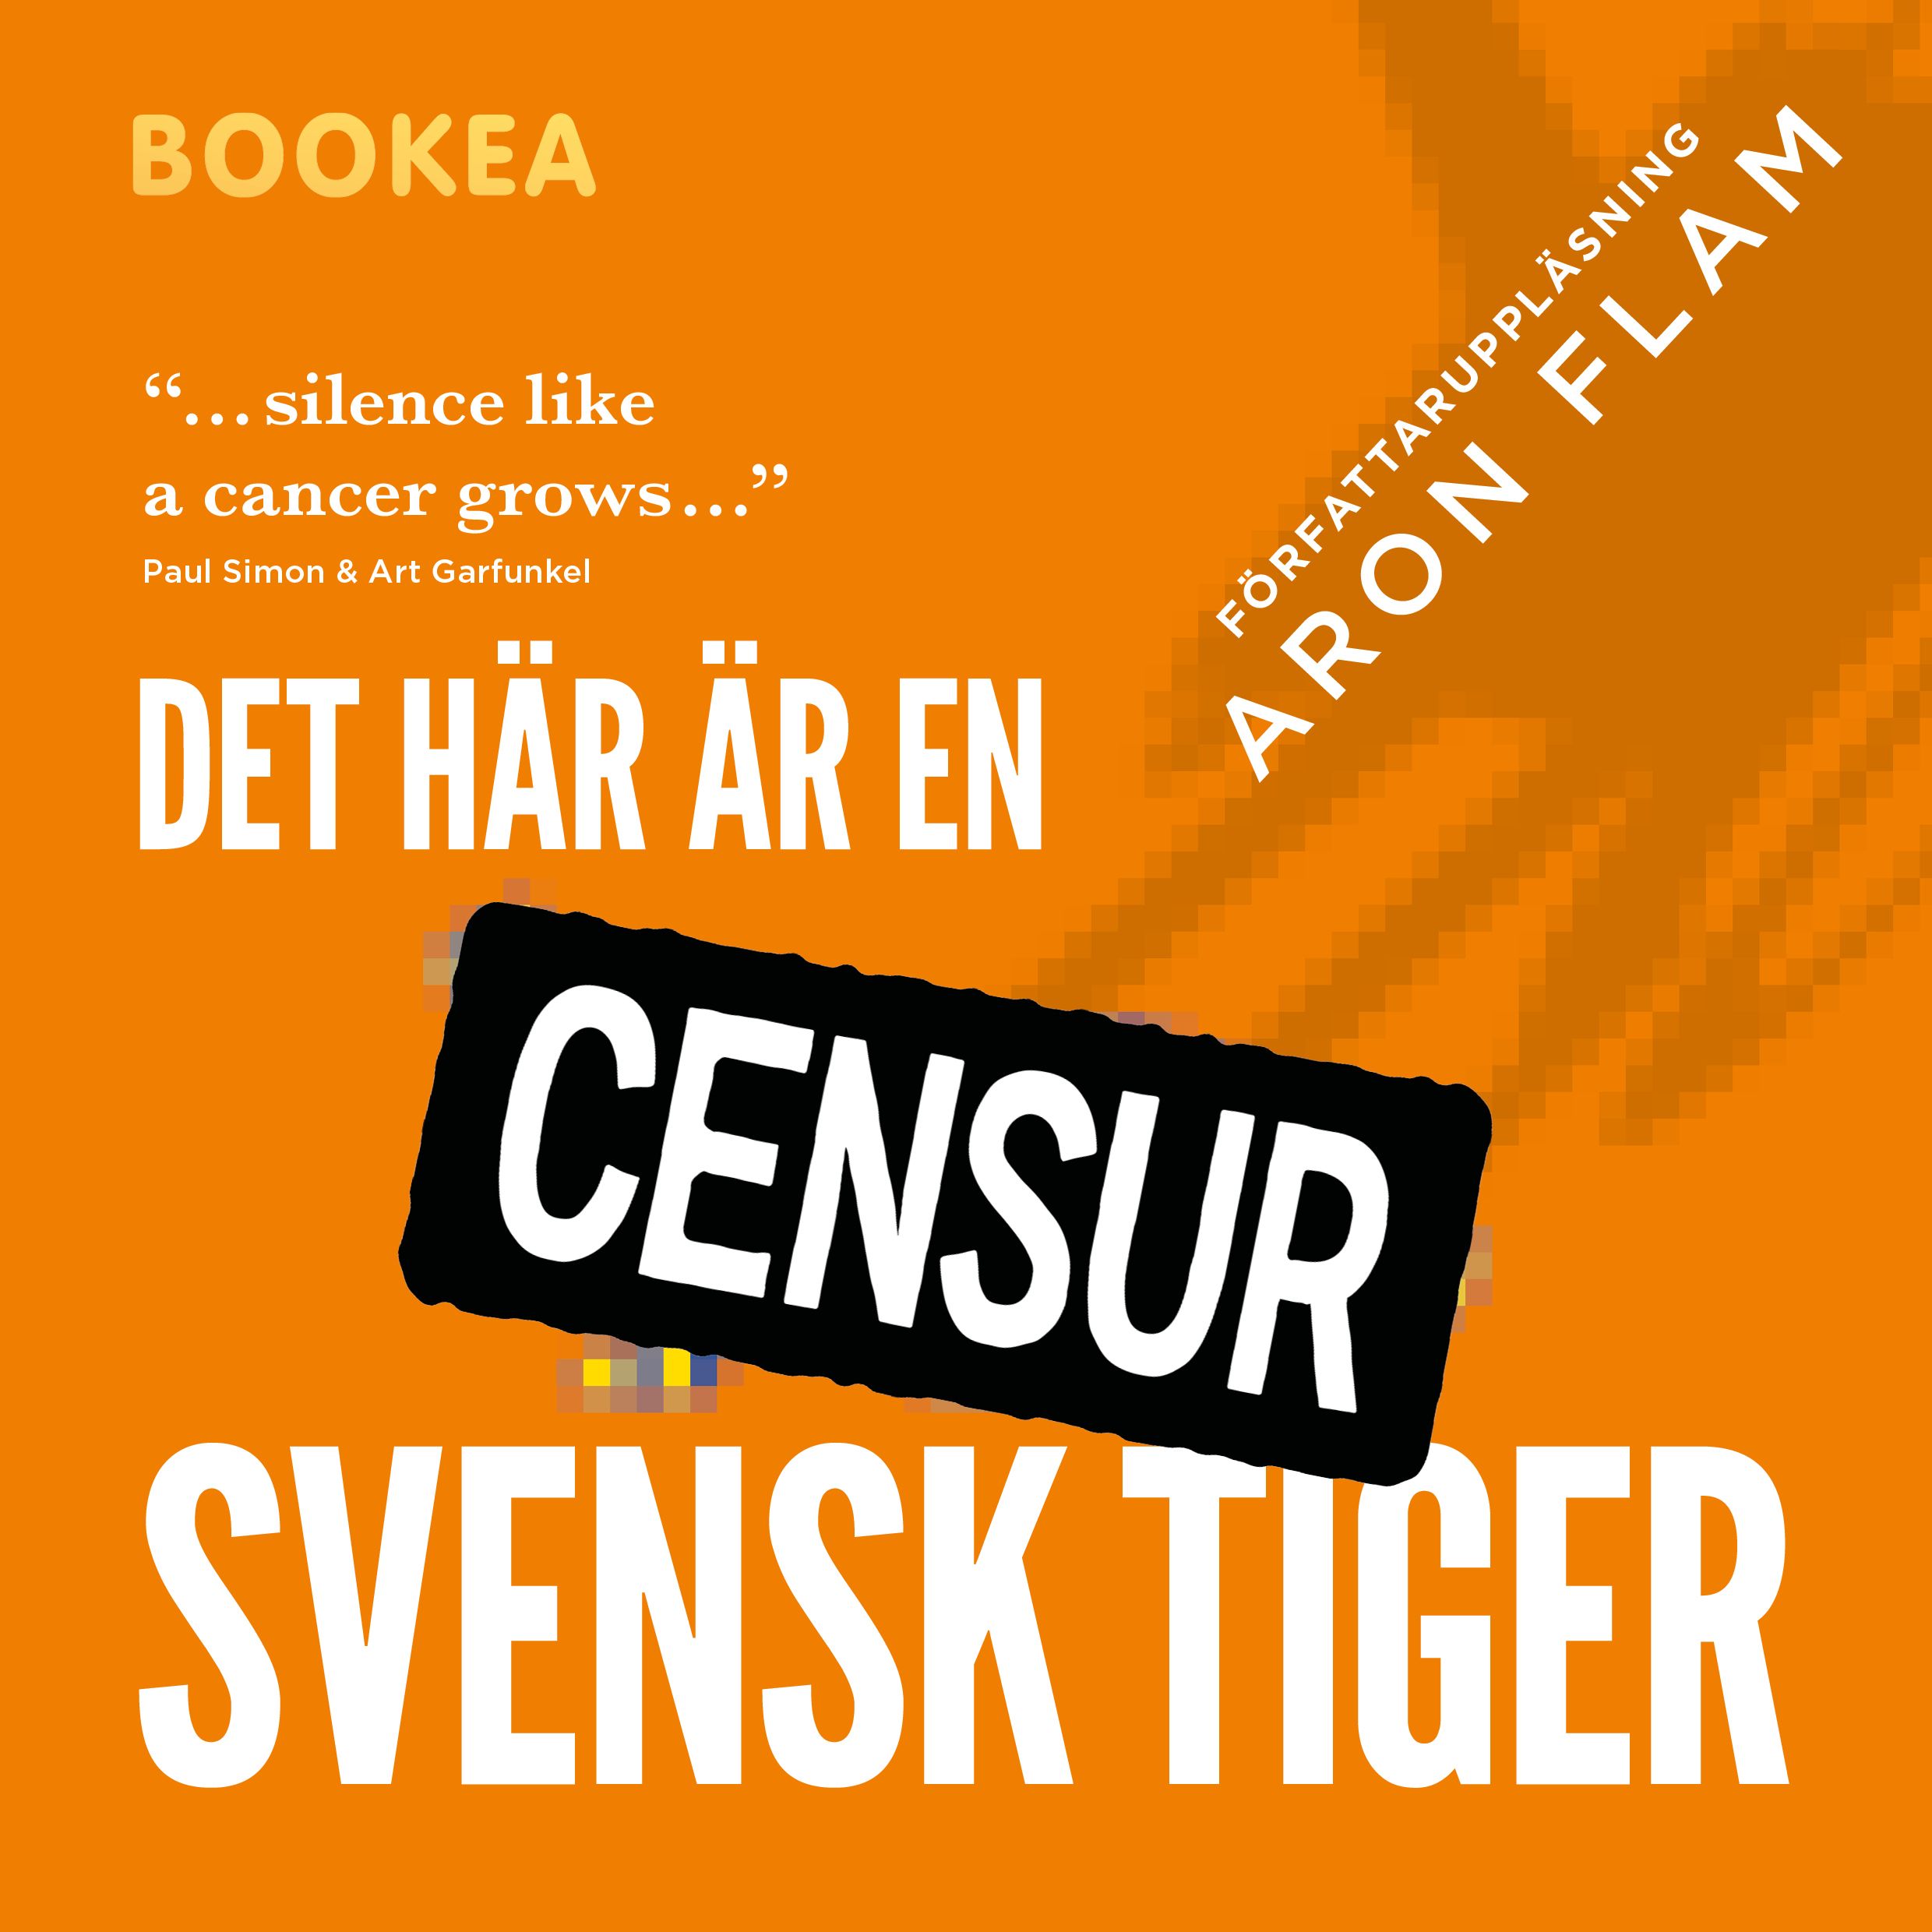 Det här är en svensk tiger, ljudbok av Aron Flam